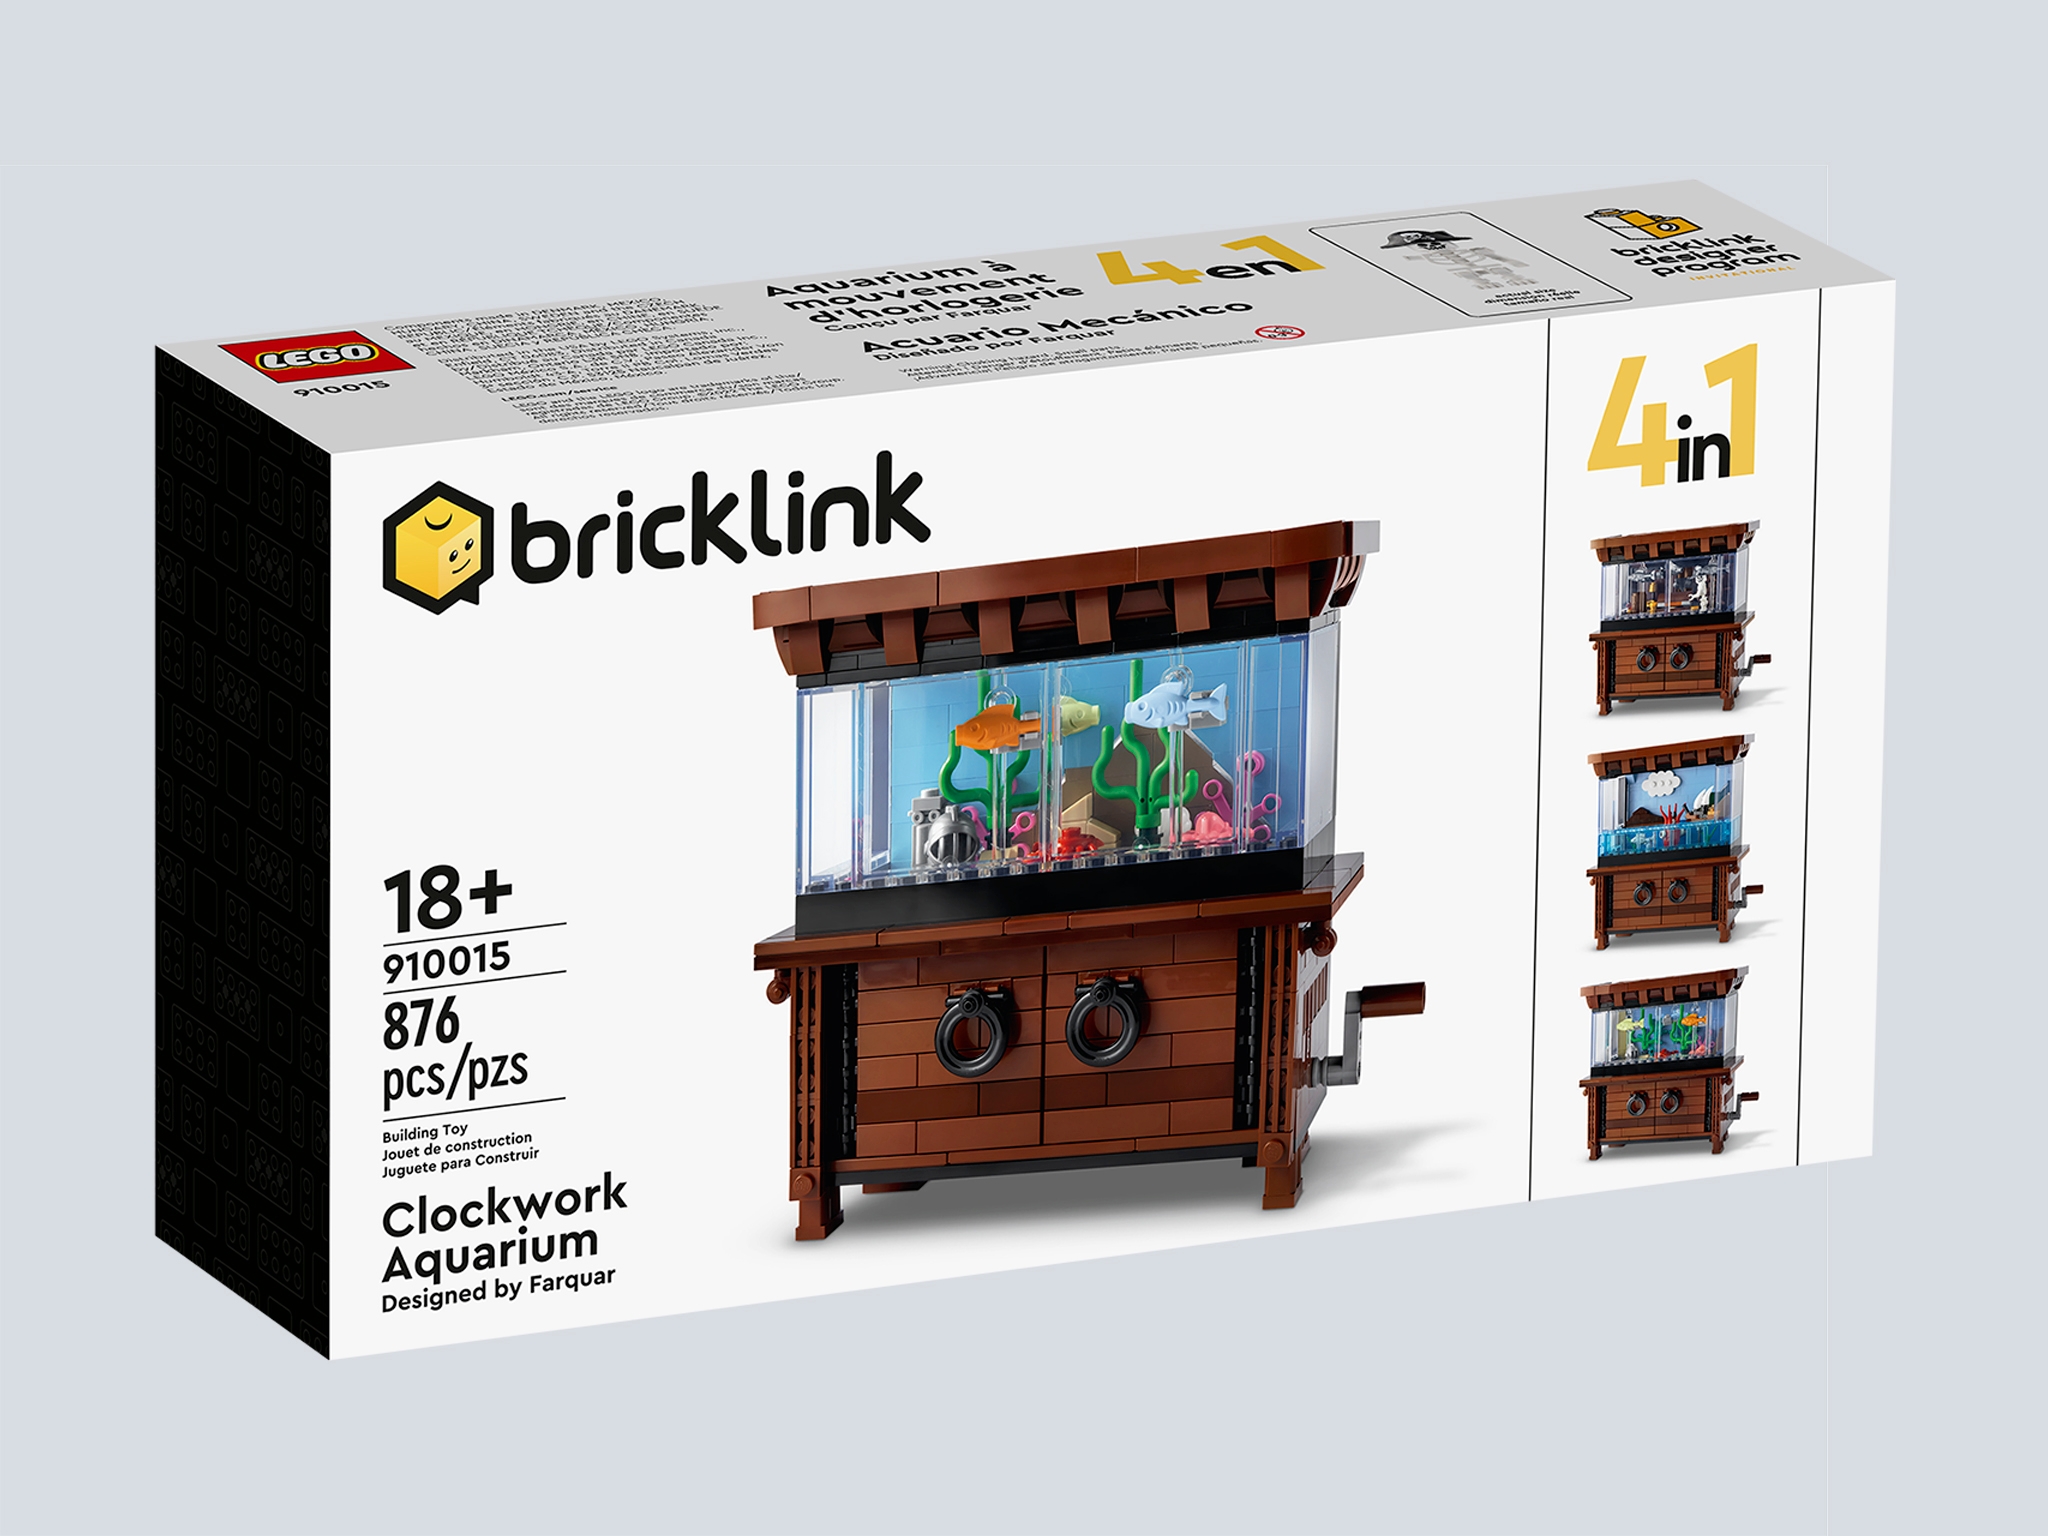 Clockwork Aquarium] [BrickLink]